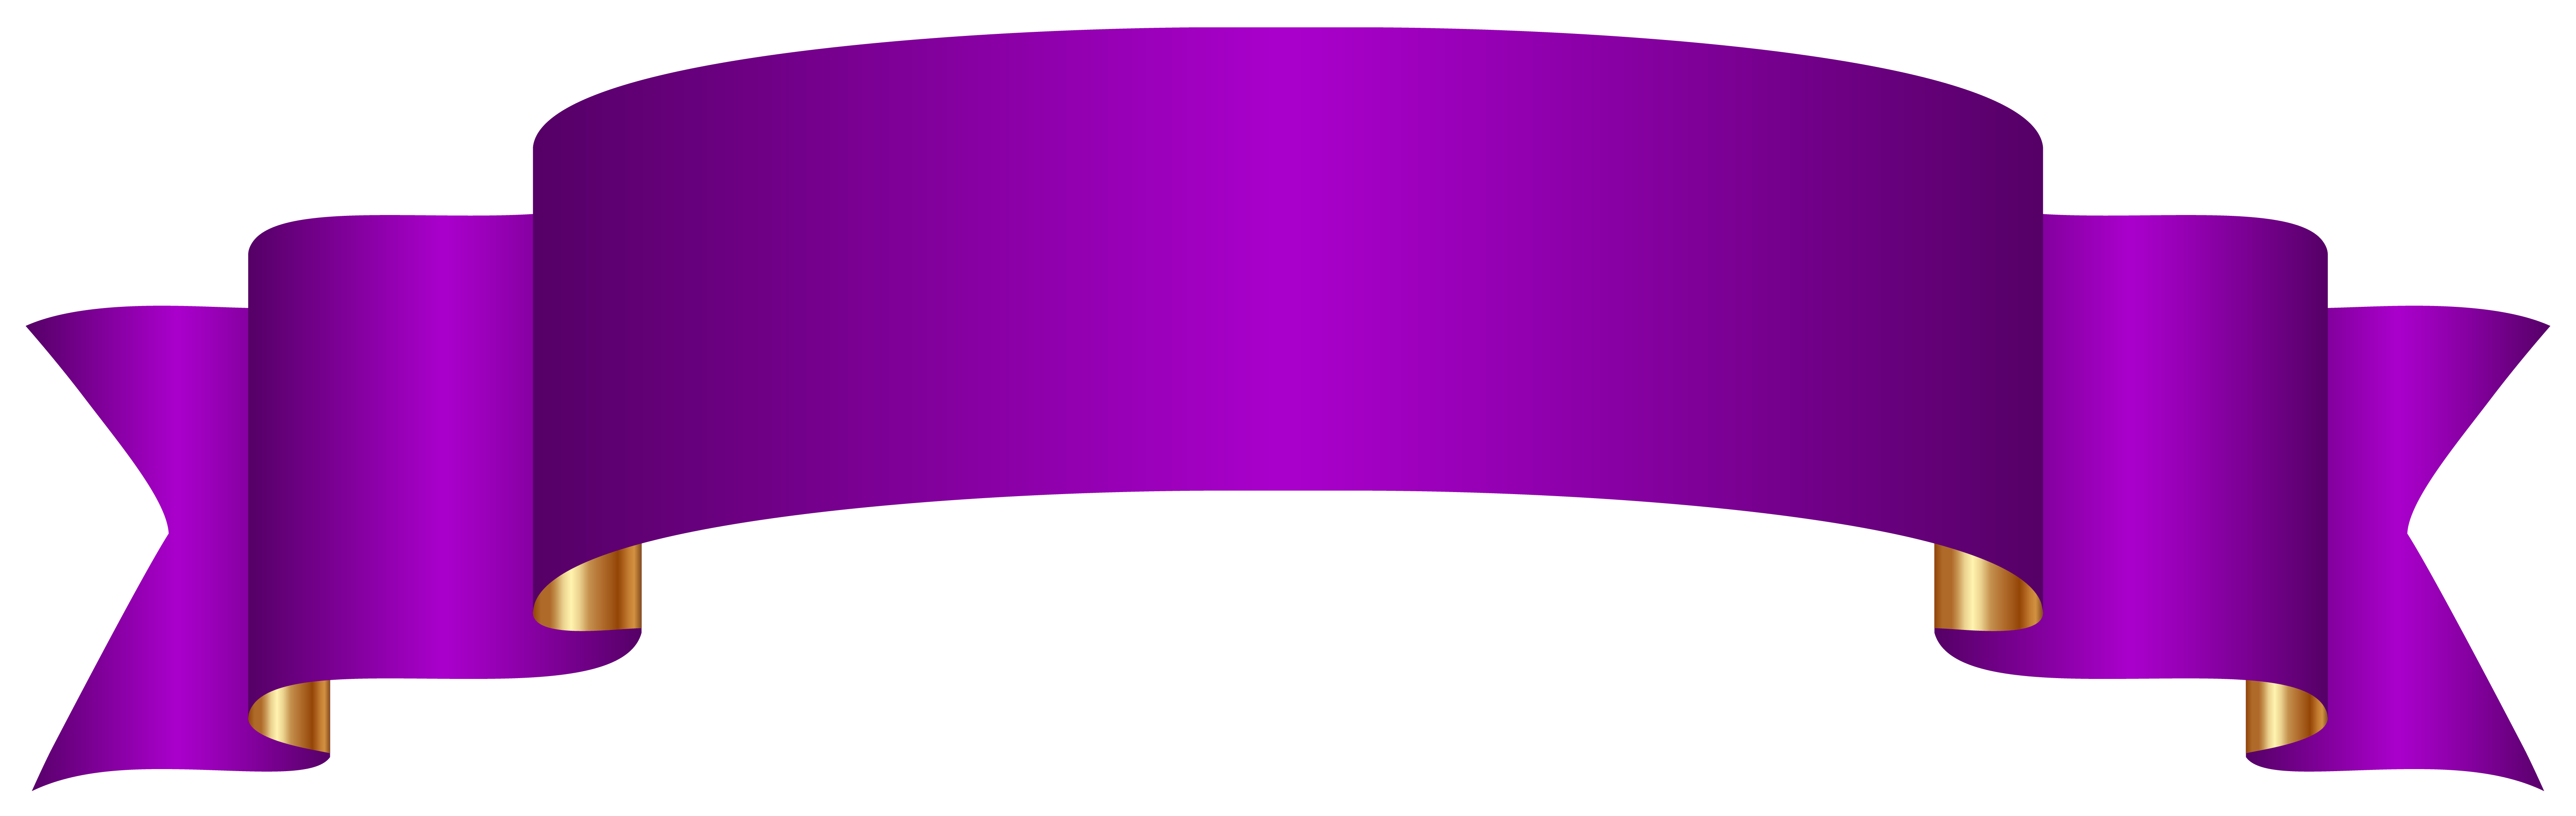 Banner purple ideal vistalist. Clipart png